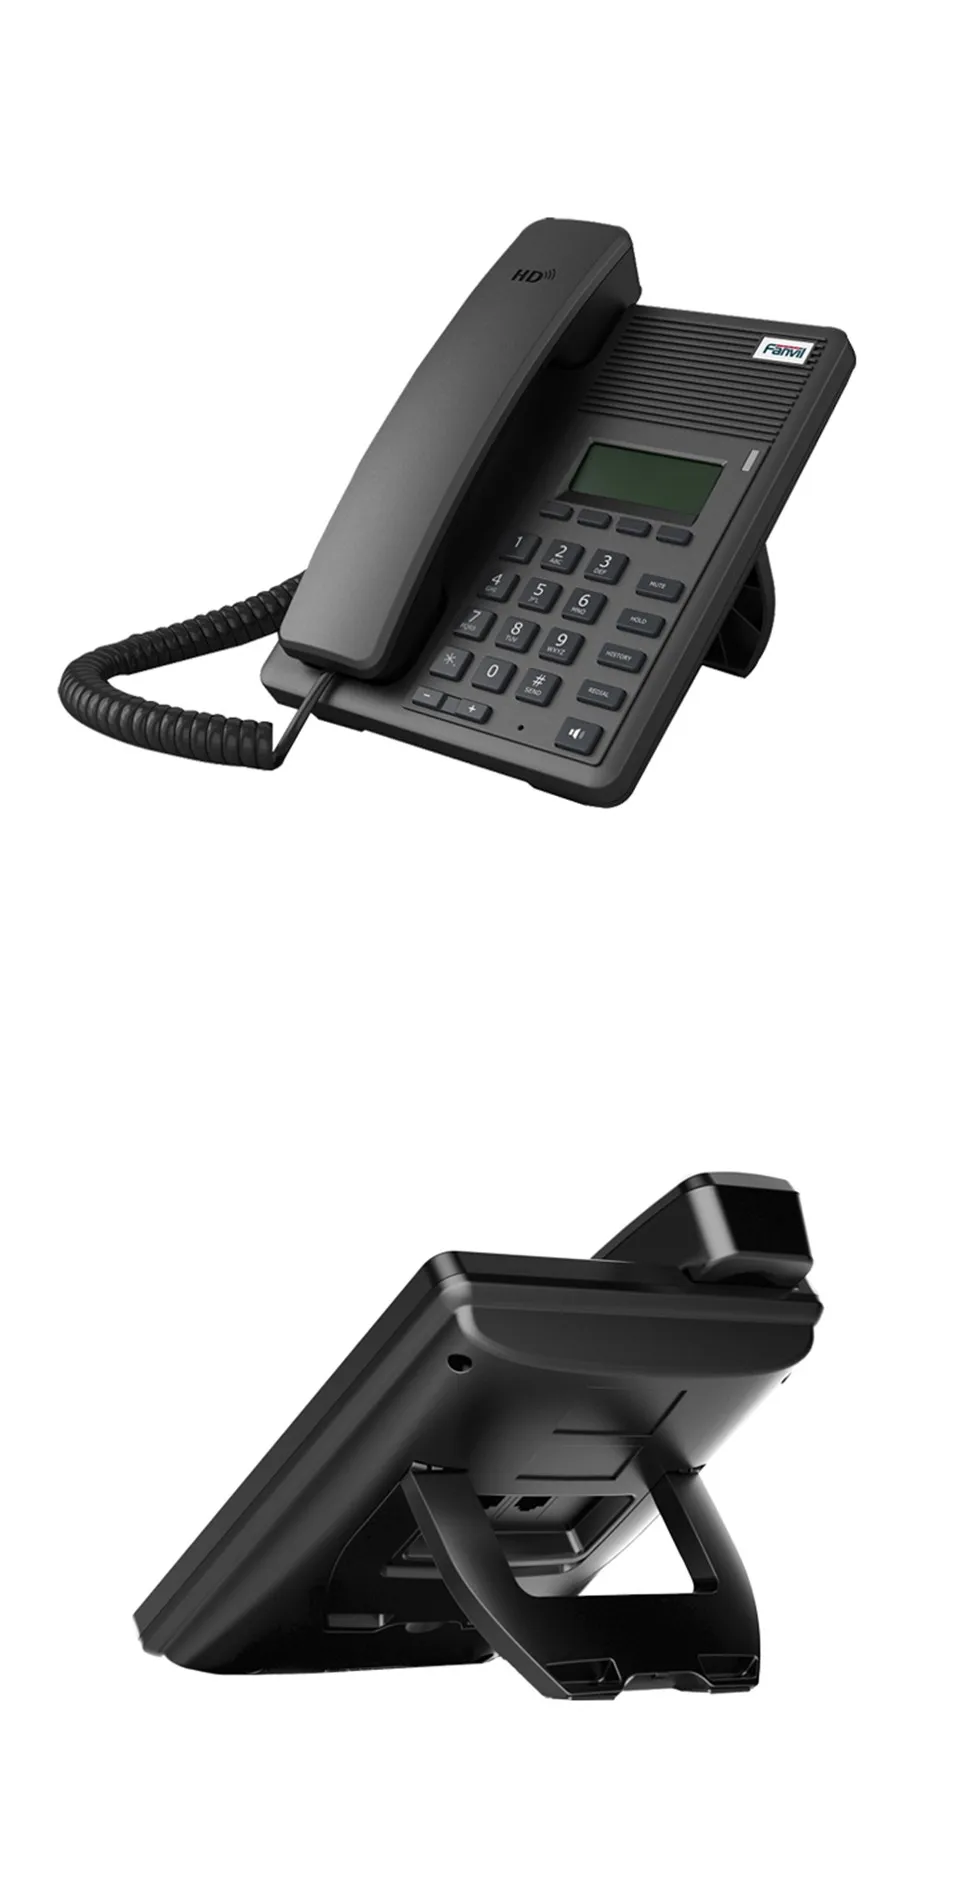 HD Voice 2 SIP линии IP телефон, VoIP телефон. Asterisk Elastix мини-телефон скольжения RJ09 гарнитура интерфейс, поддержка нескольких языков